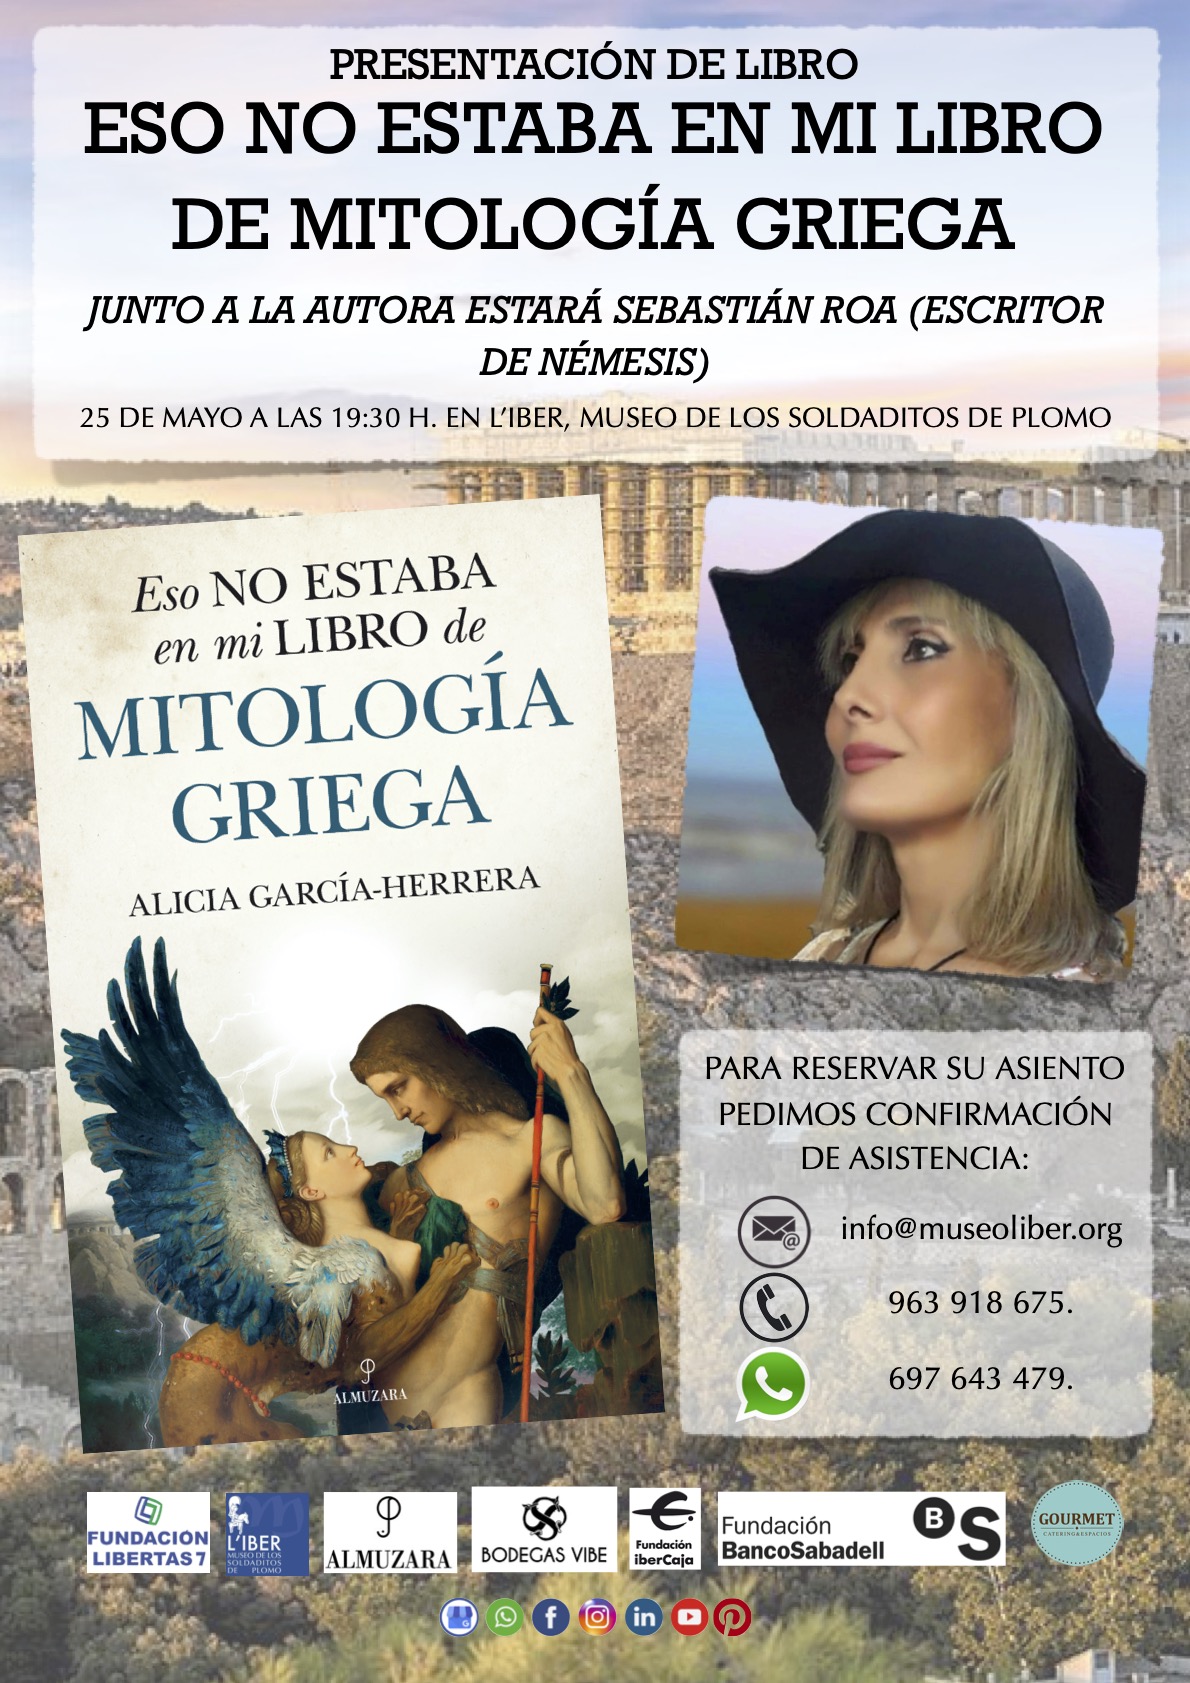 Presentación del libro “Eso no estaba en mi libro de mitología griega” Alicia García Herrera